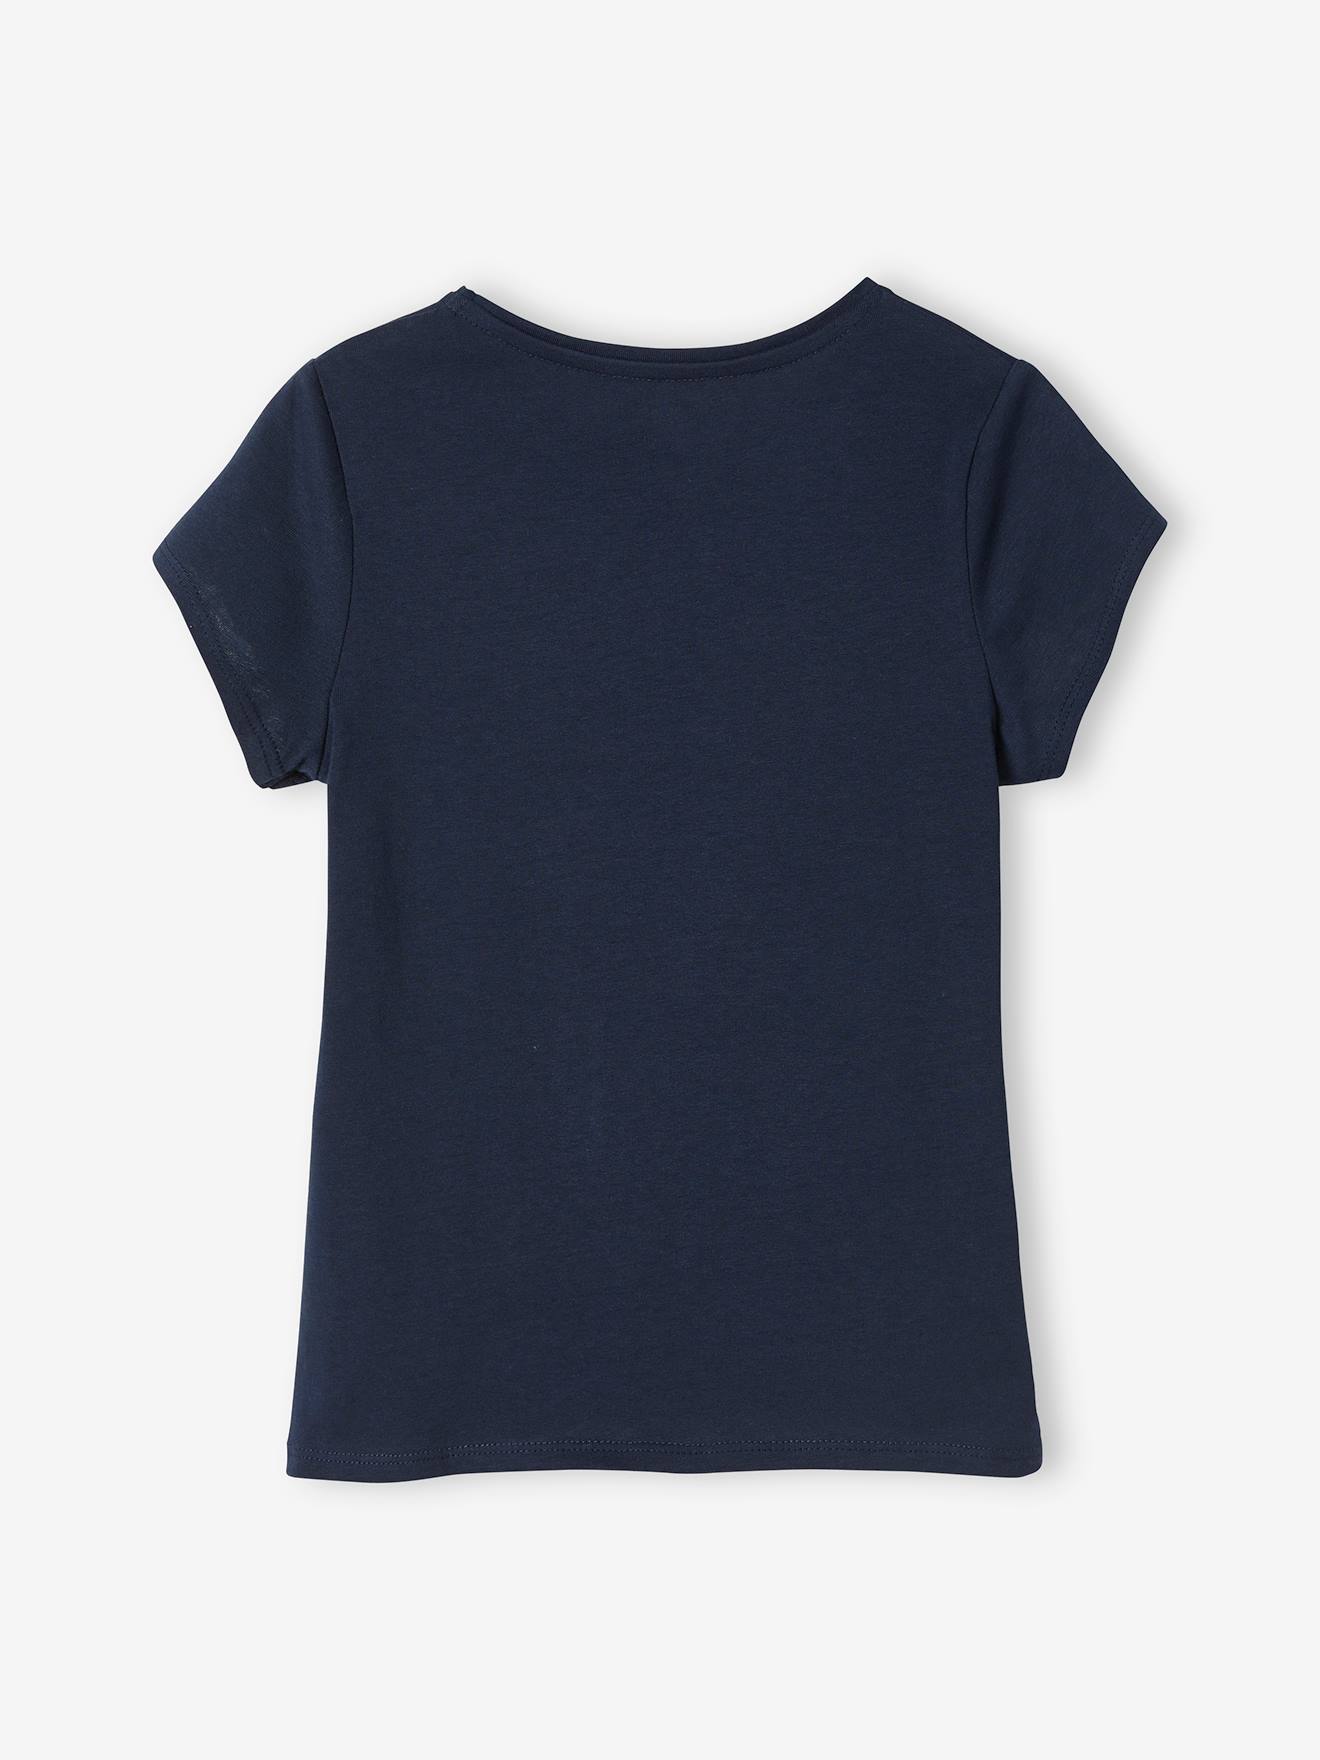 Plain Blue Shirt For Girls